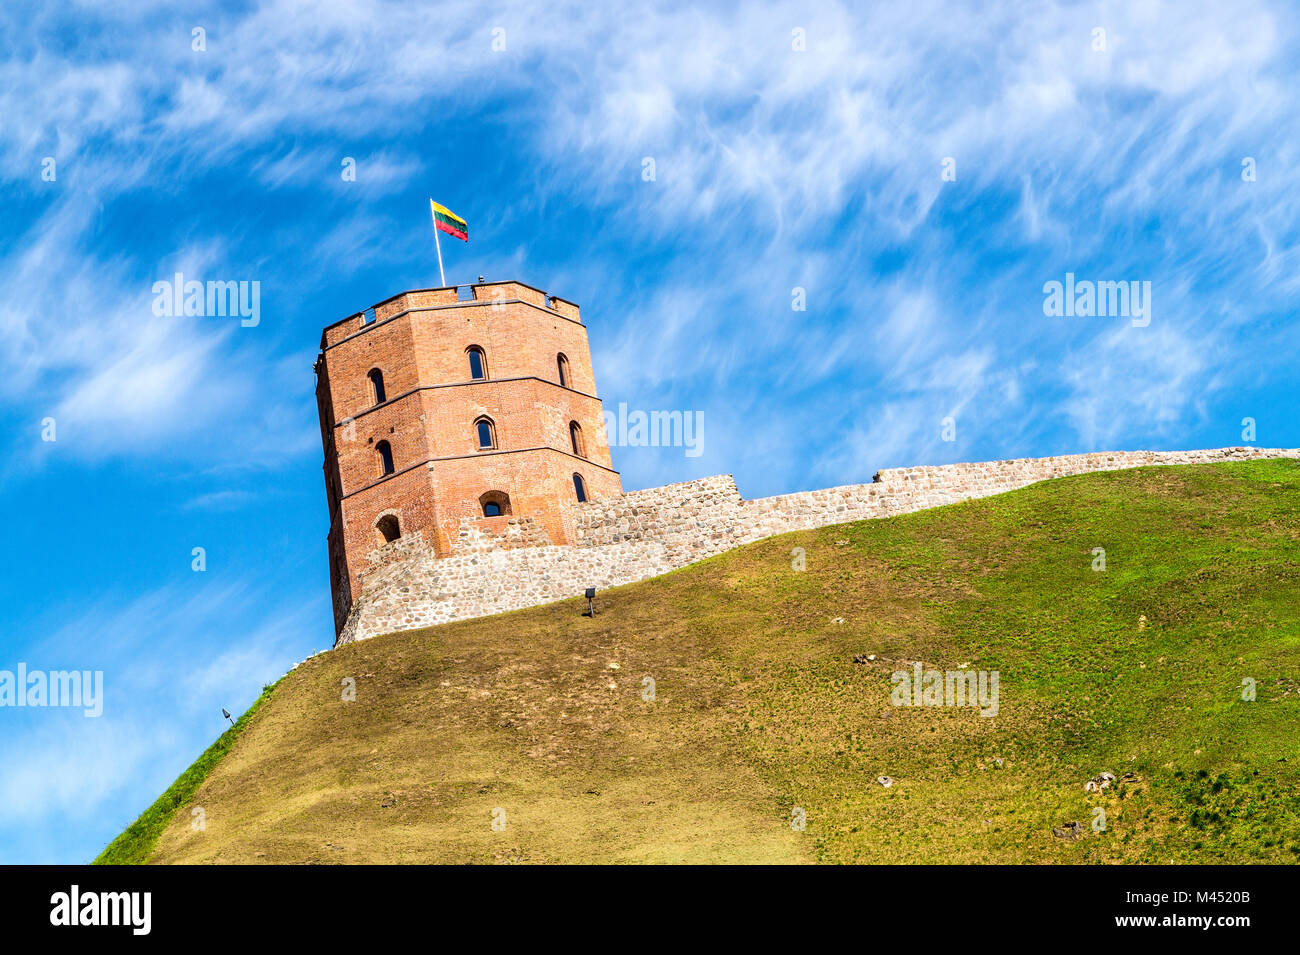 La tour de Gediminas (Gedimino) à Vilnius, Lituanie. Partiellement nuageux ciel sur une journée d'été. Célèbre attraction touristique de la ville. Banque D'Images